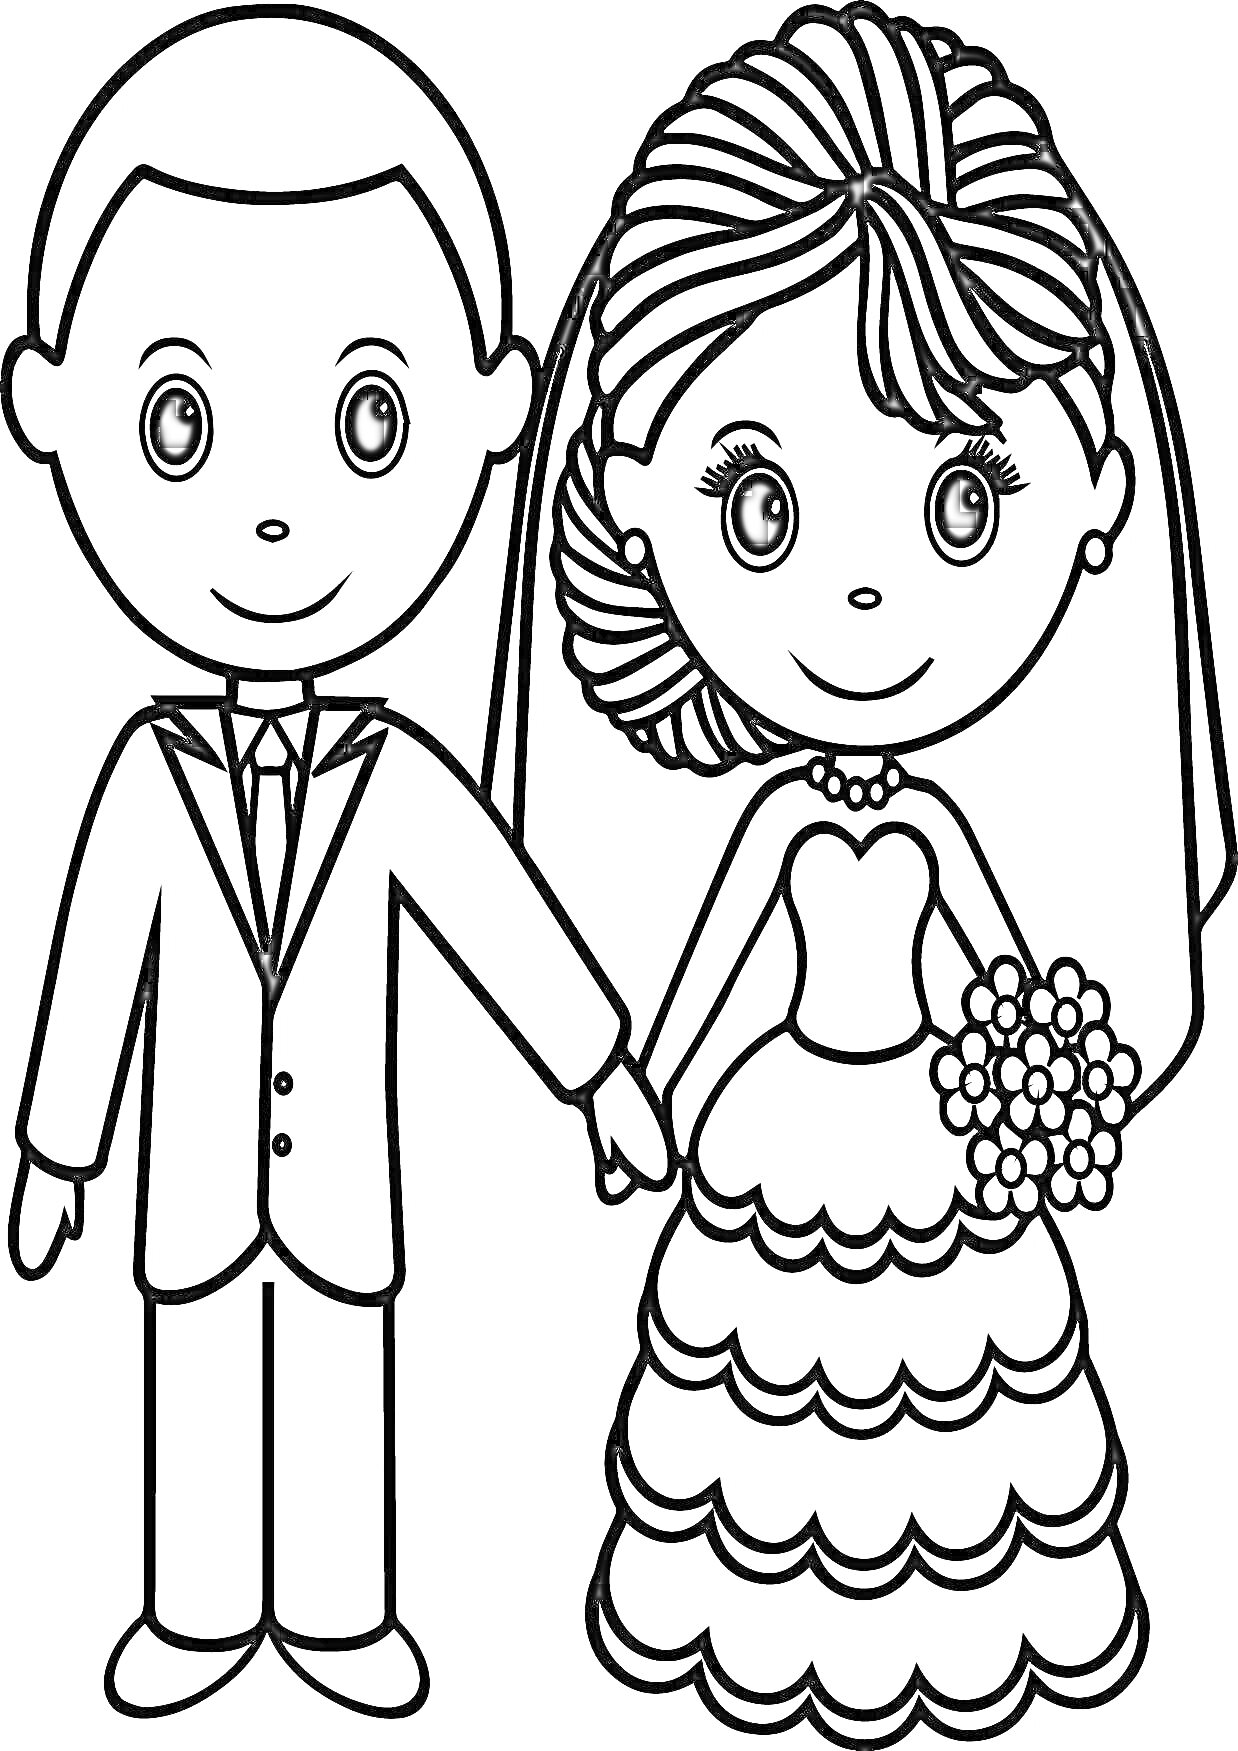 Раскраска Молодожены: жених и невеста держат друг друга за руки, невеста держит букет